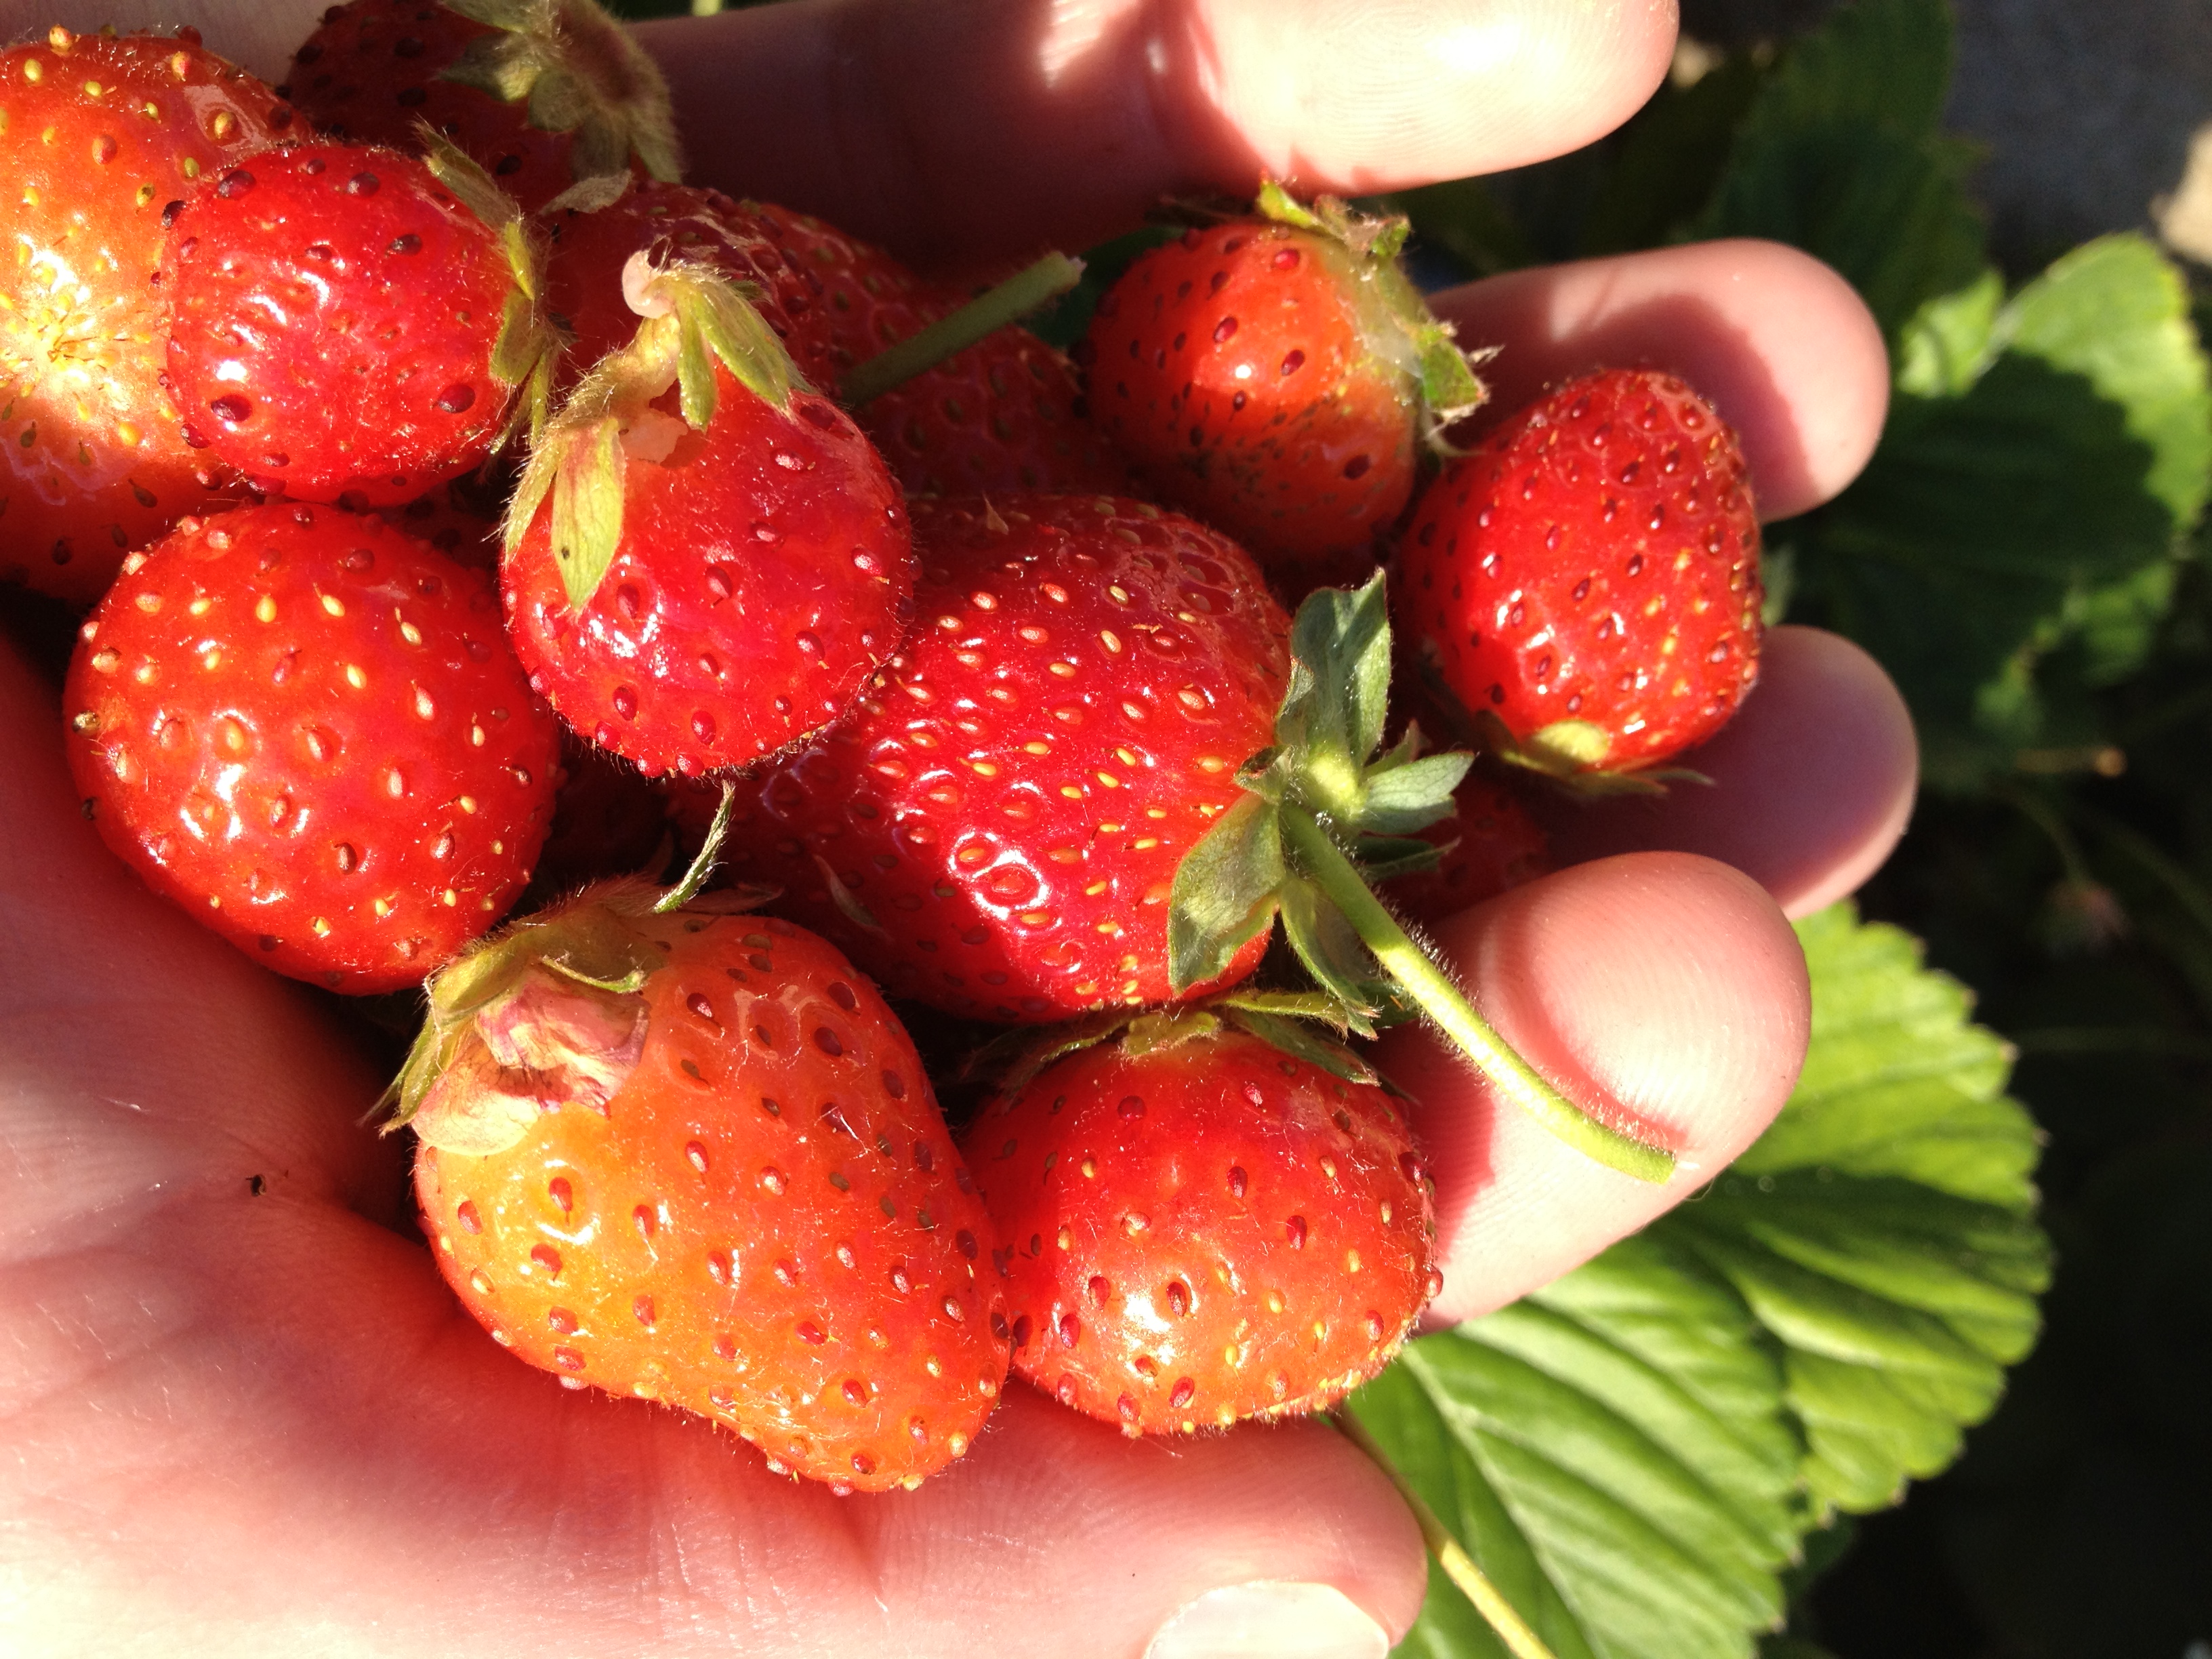 Garden strawberries